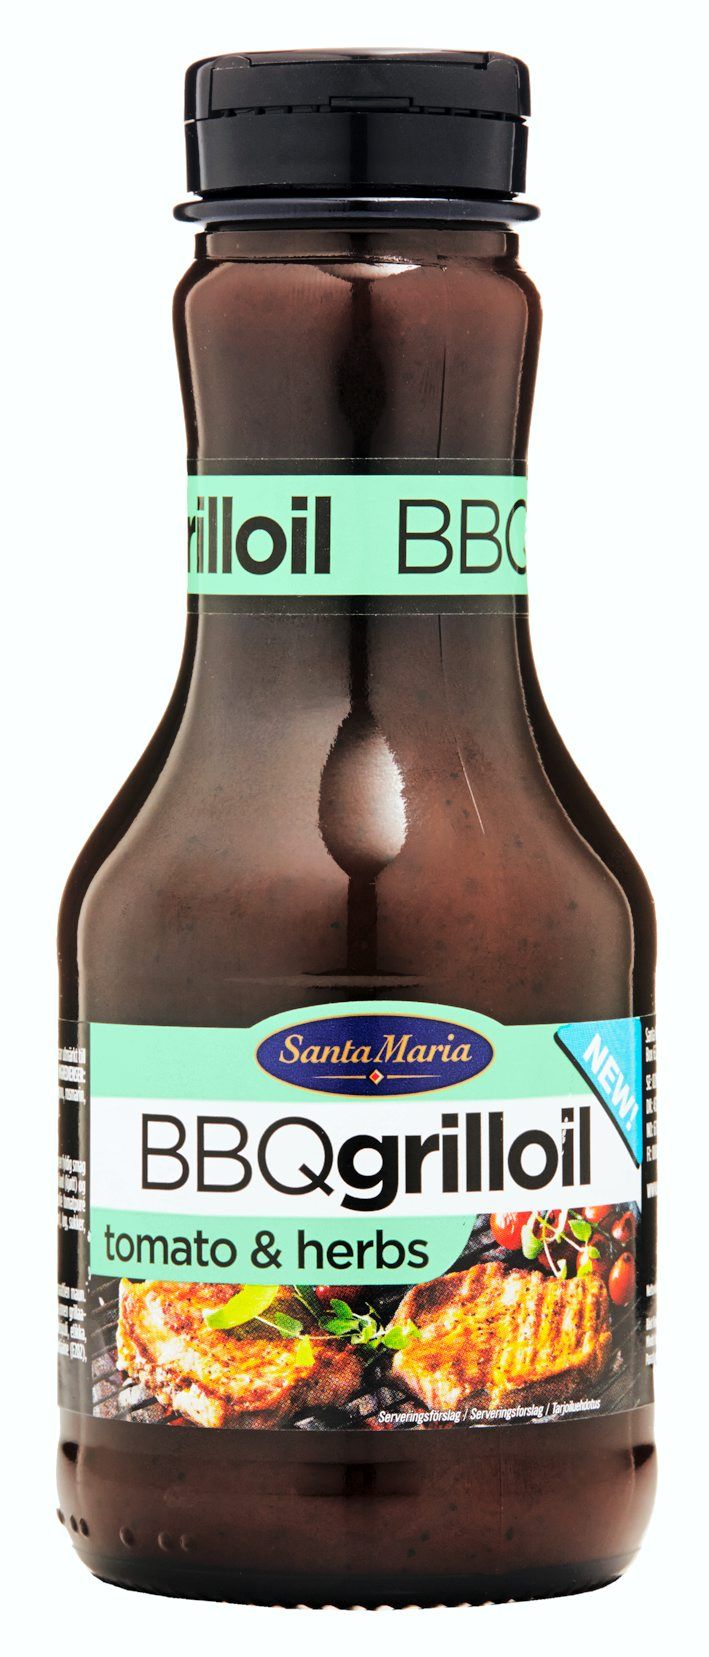 BBQ Grilloil Tomato & Herbs